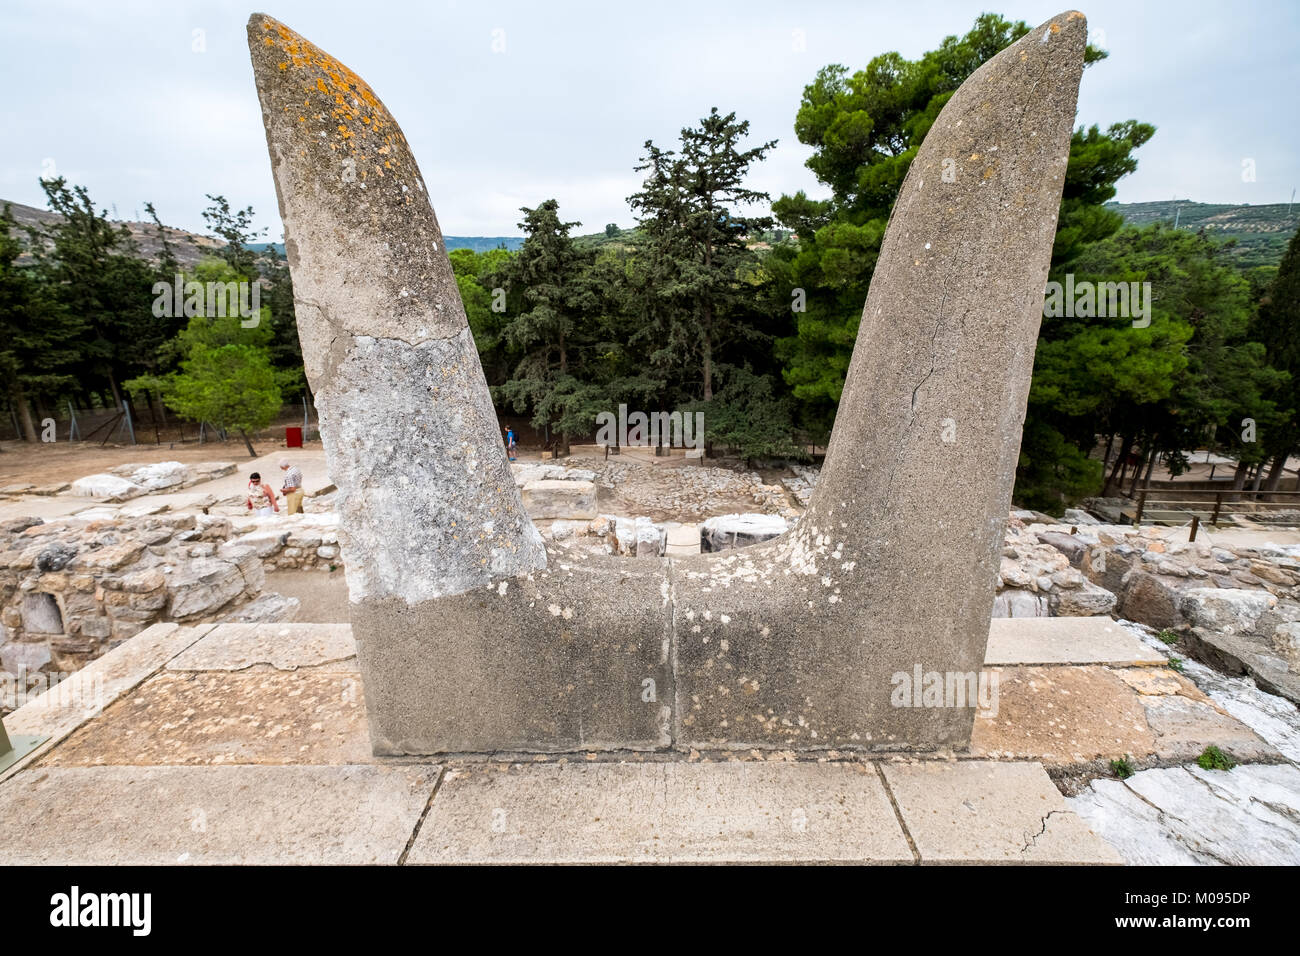 Les cornes de consécration, cornes de taureau sacré, symbole de la pierre sacrée de Bull, parties du complexe du temple Minoen de Knossos, le palais de Knossos, ancienne c Banque D'Images